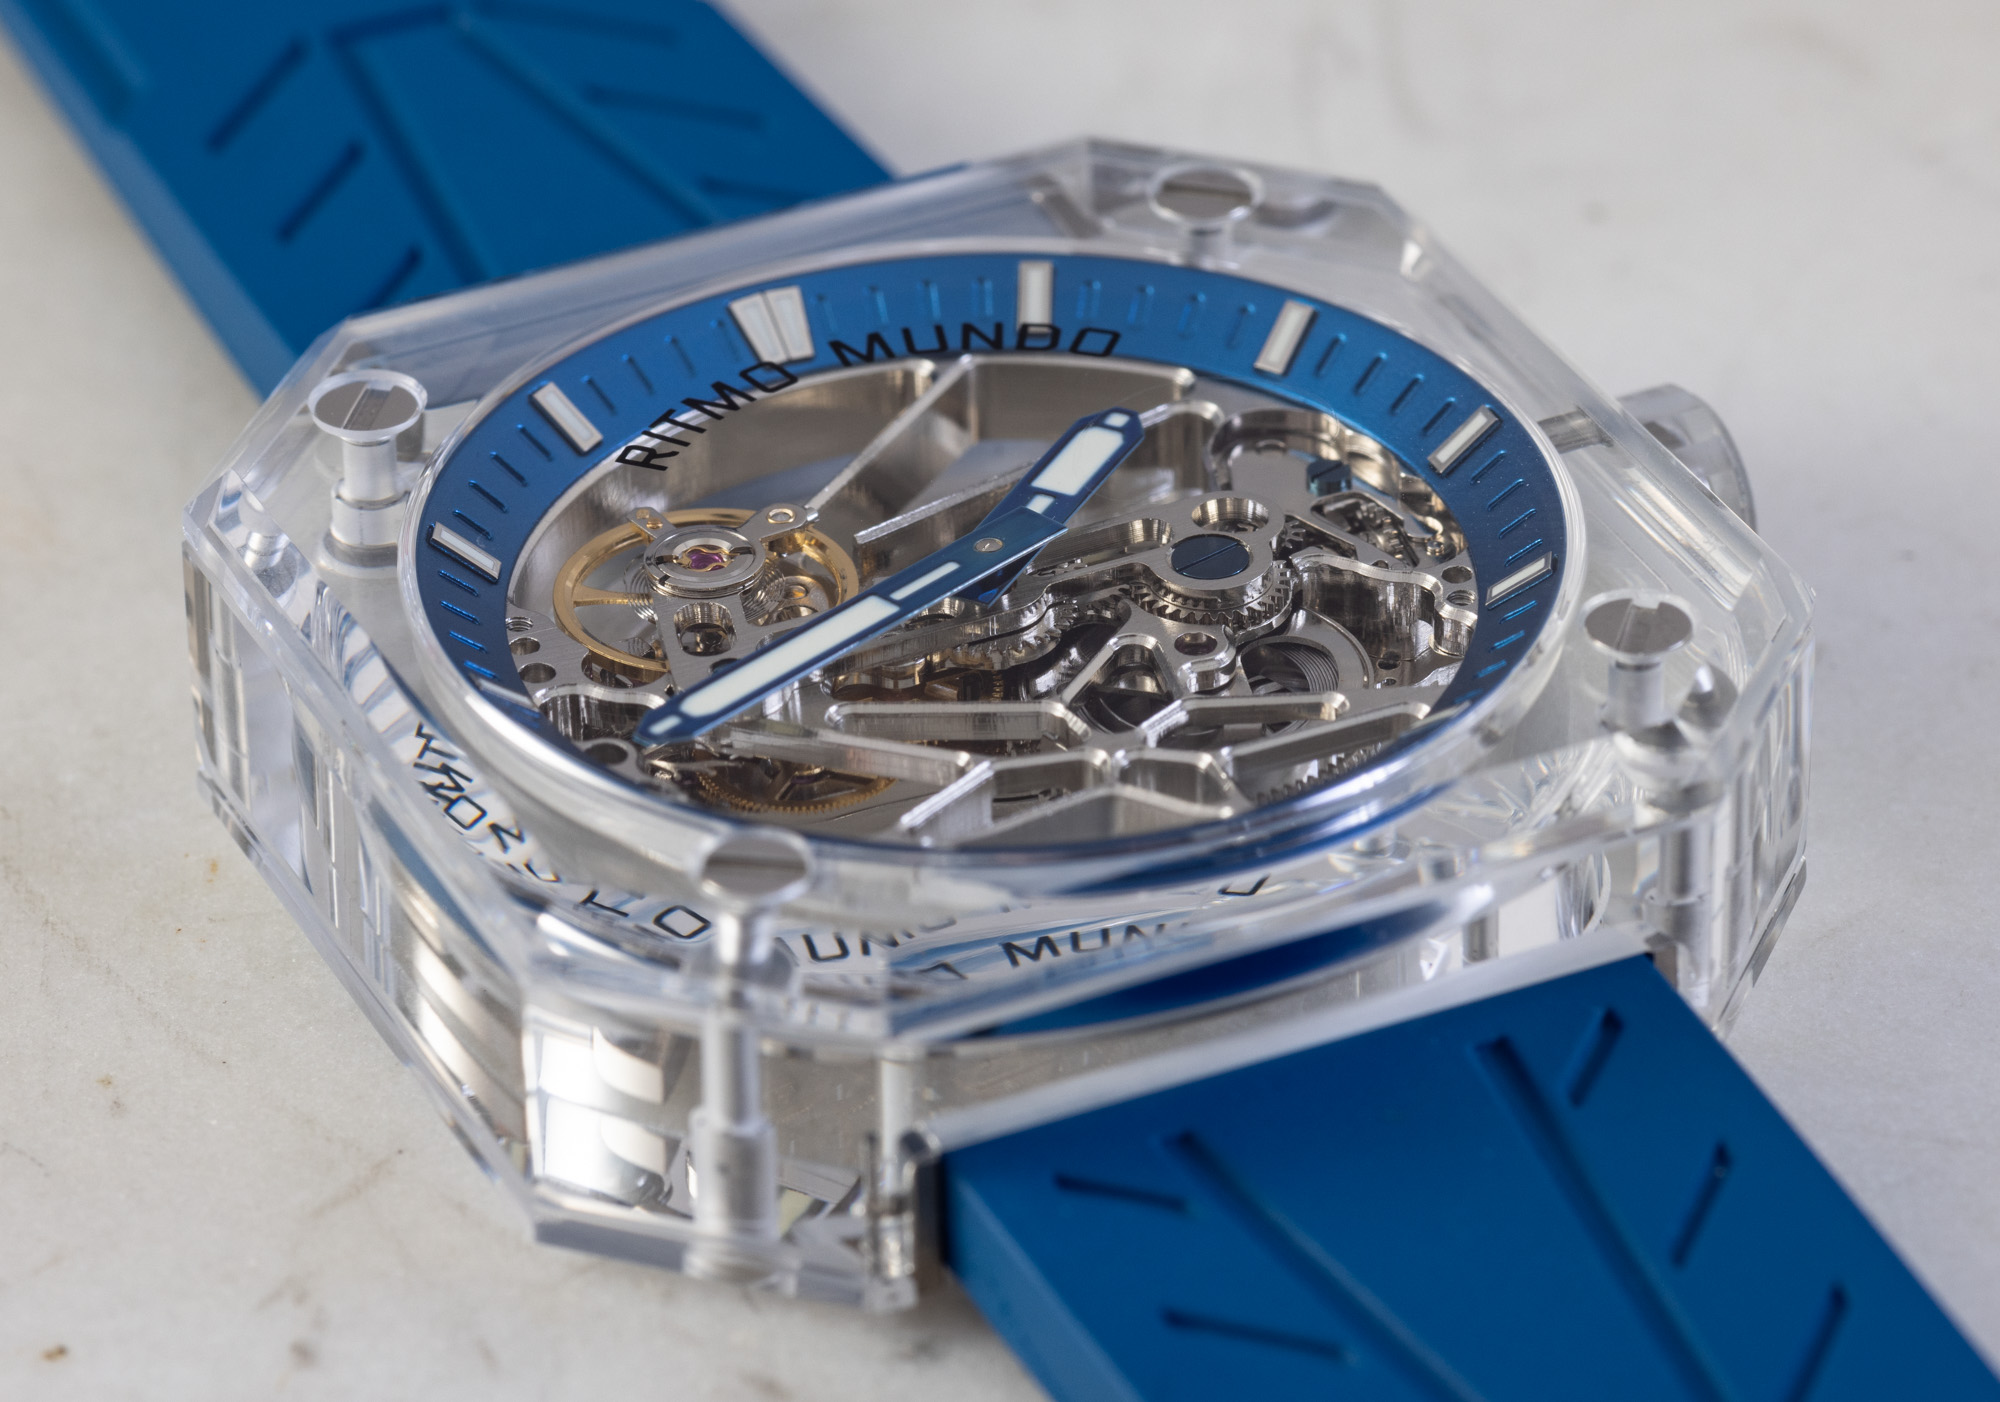 Прозрачные часы Ritmo Mundo Pegasus Crystal перезапускают бренд